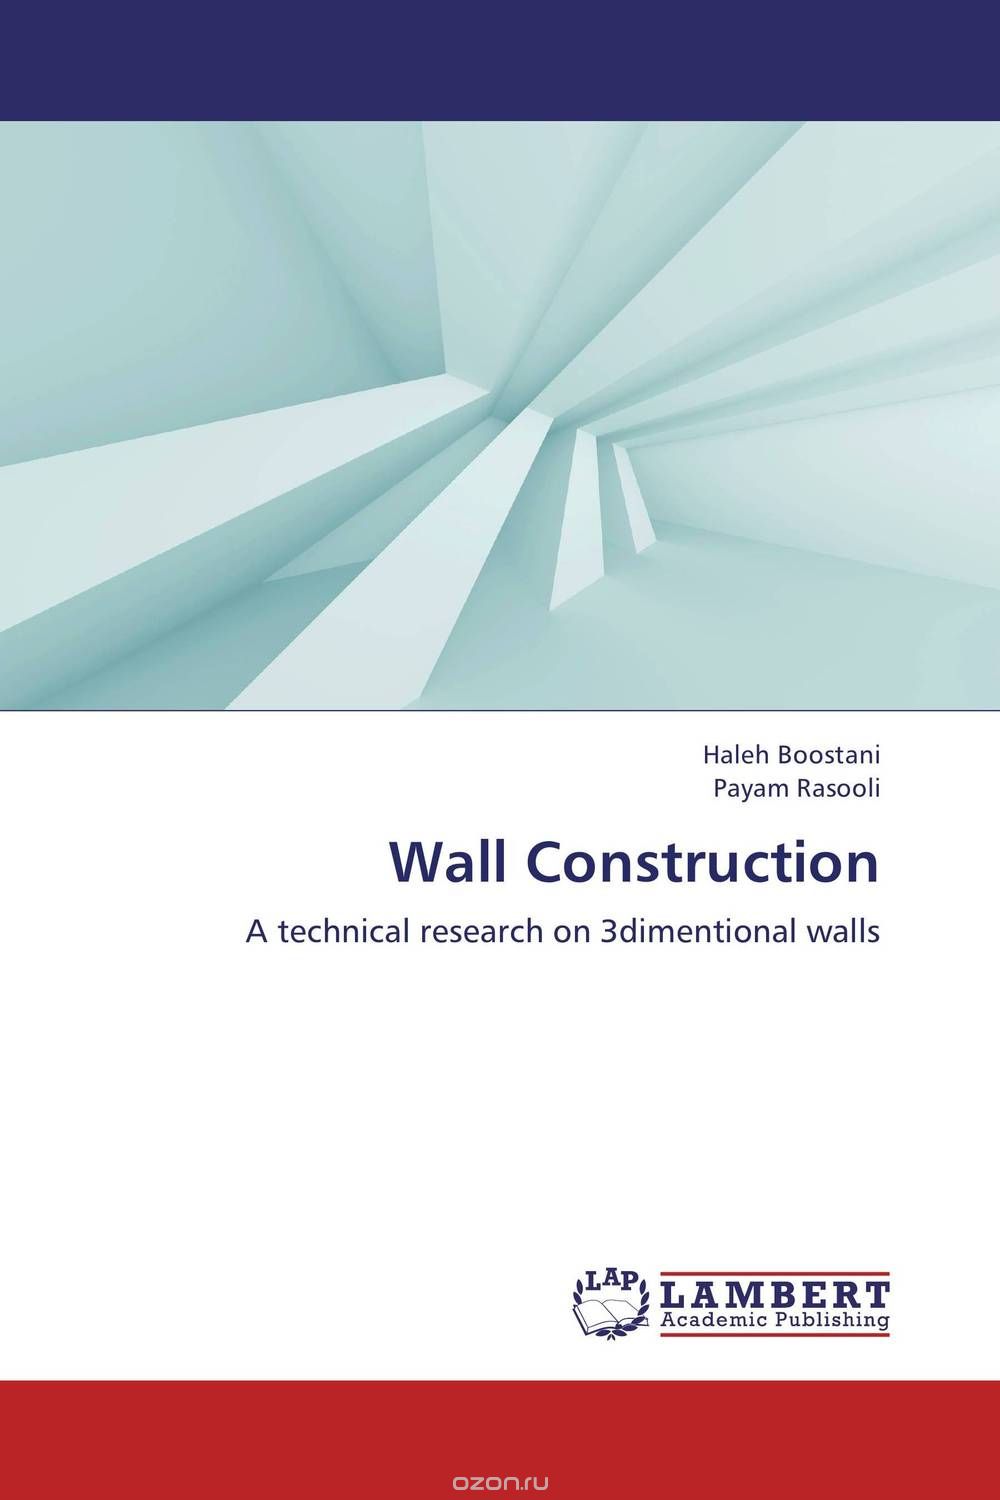 Скачать книгу "Wall Construction"